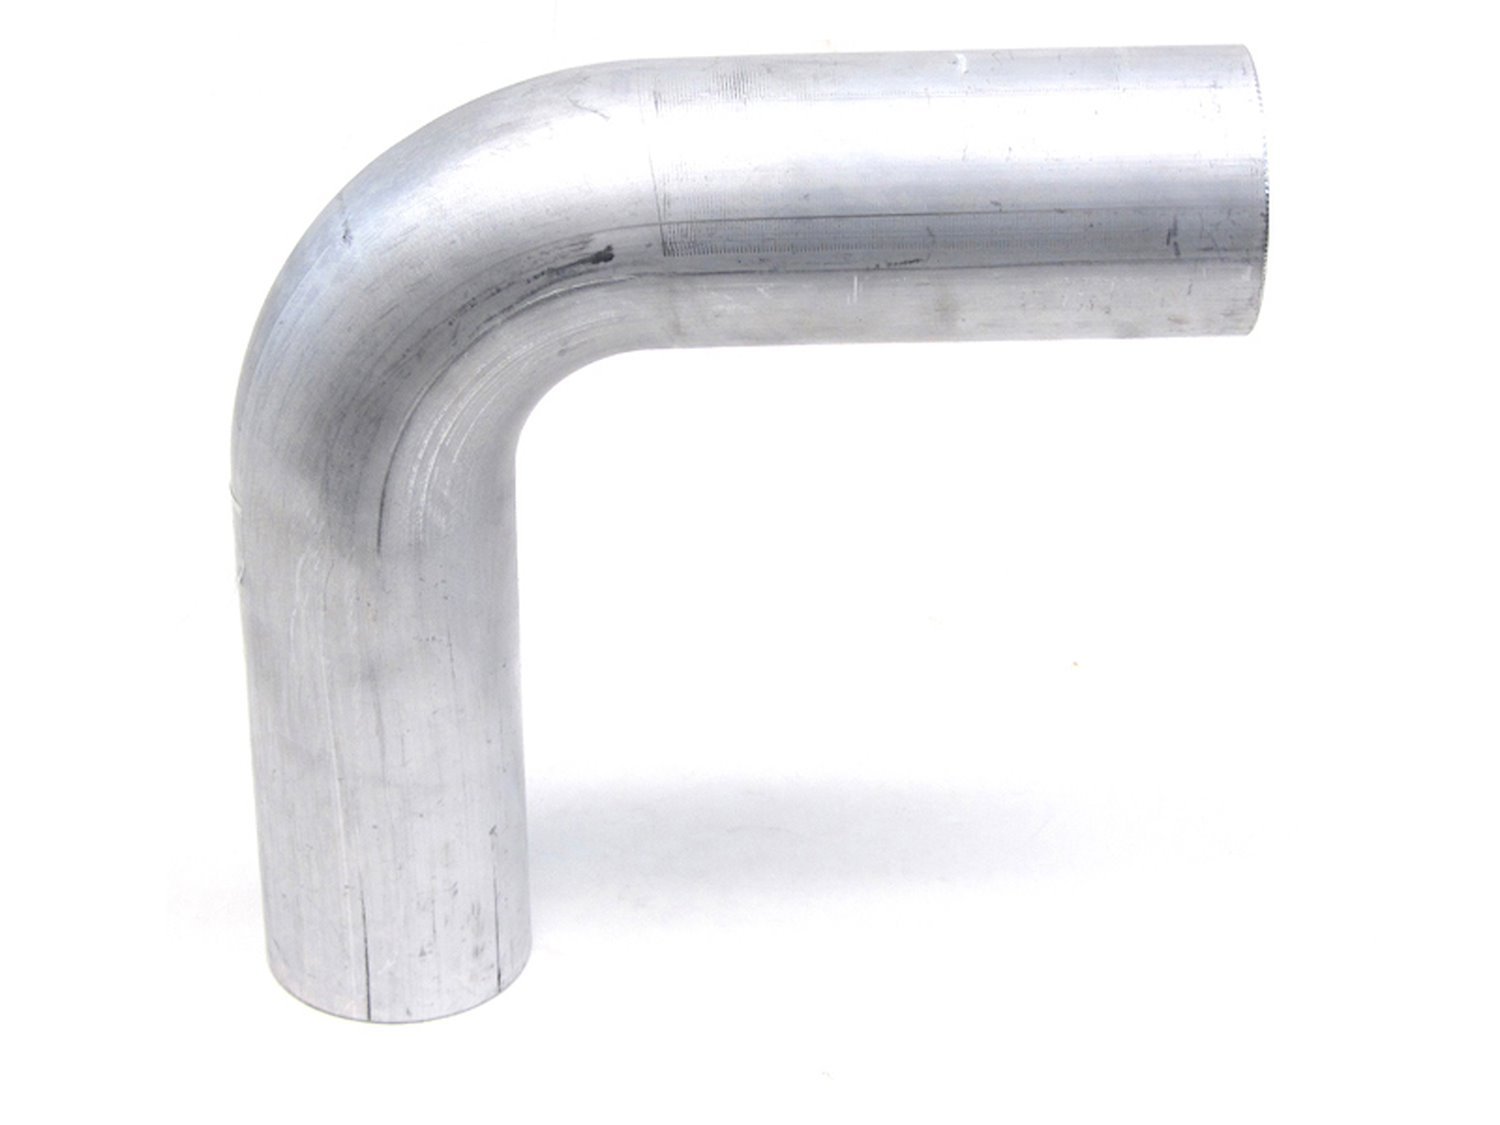 AT90-200-CLR-312 Aluminum Elbow Tube, 6061 Aluminum, 90-Degree Bend Elbow Tubing, 2 in. OD, Large Radius, 3 1/8 in. CLR